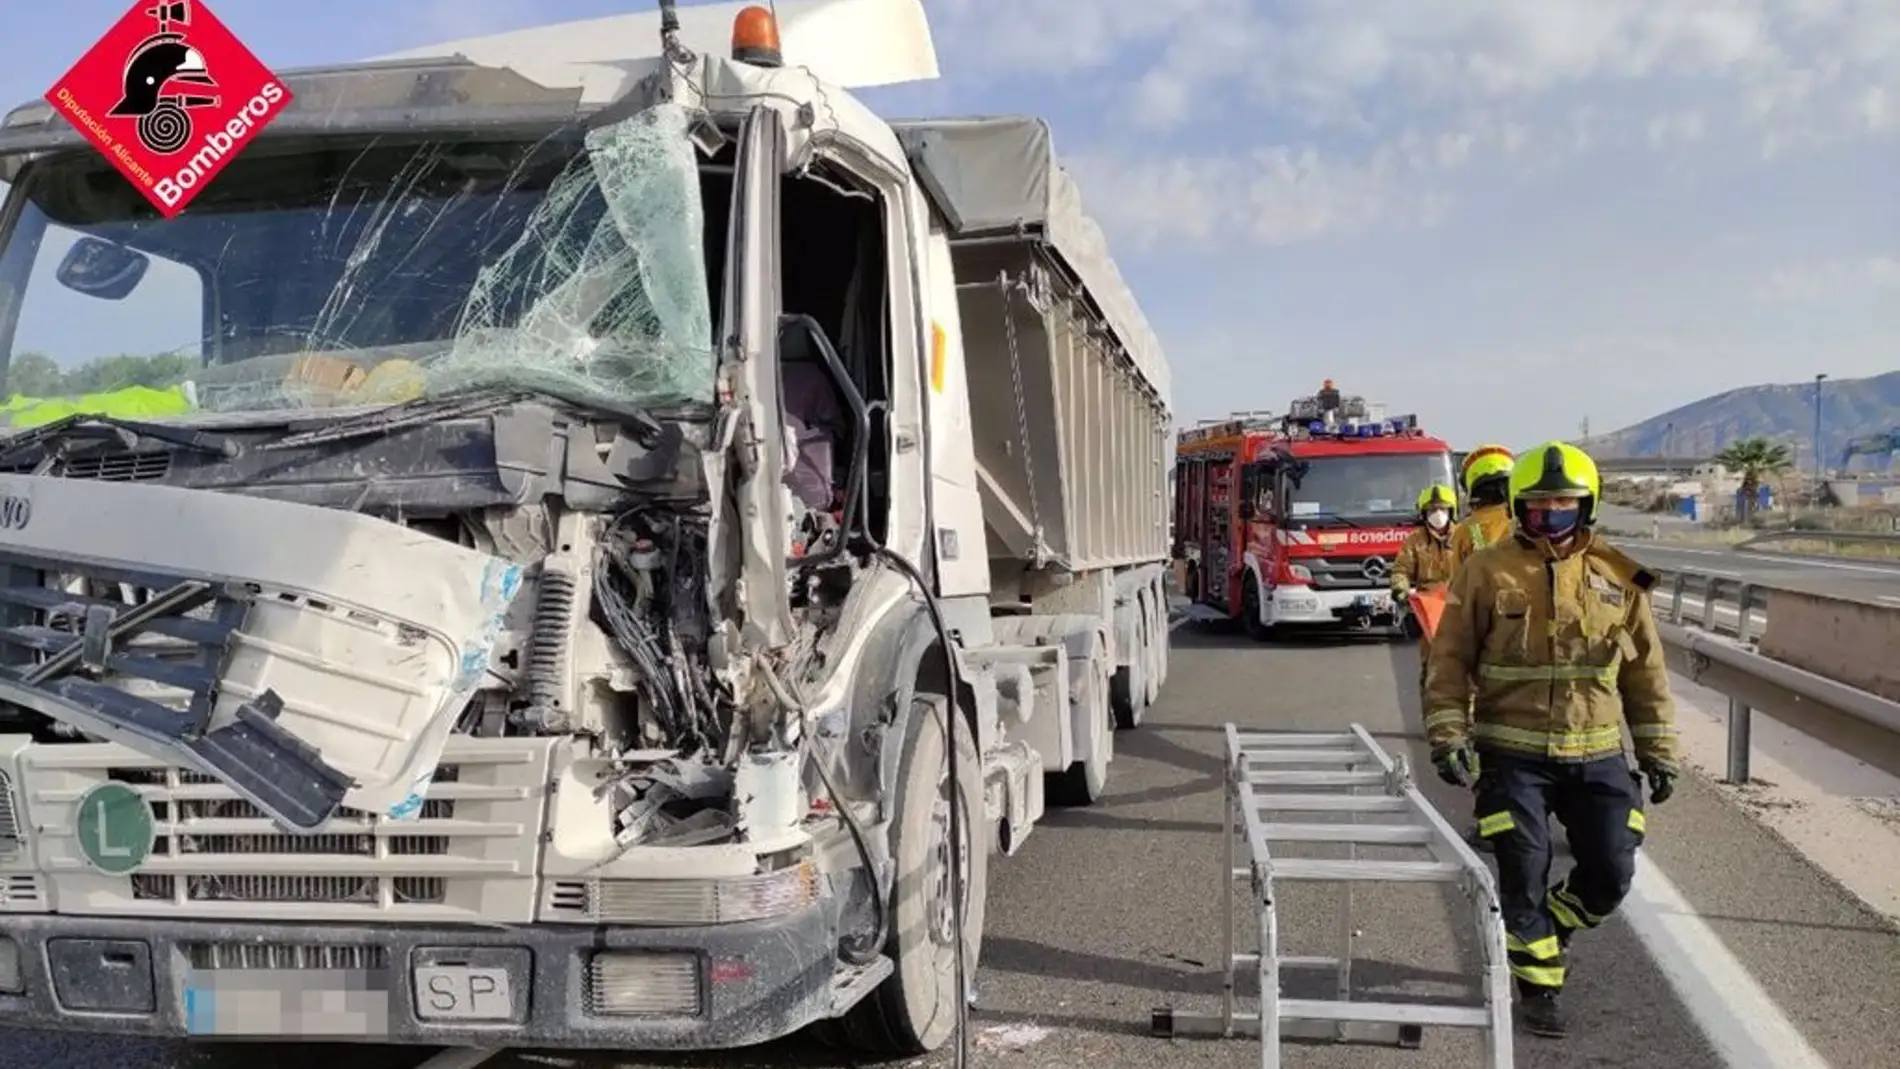 Uno de los camiones implicados en la colisión de la A-31 en Monforte del Cid.